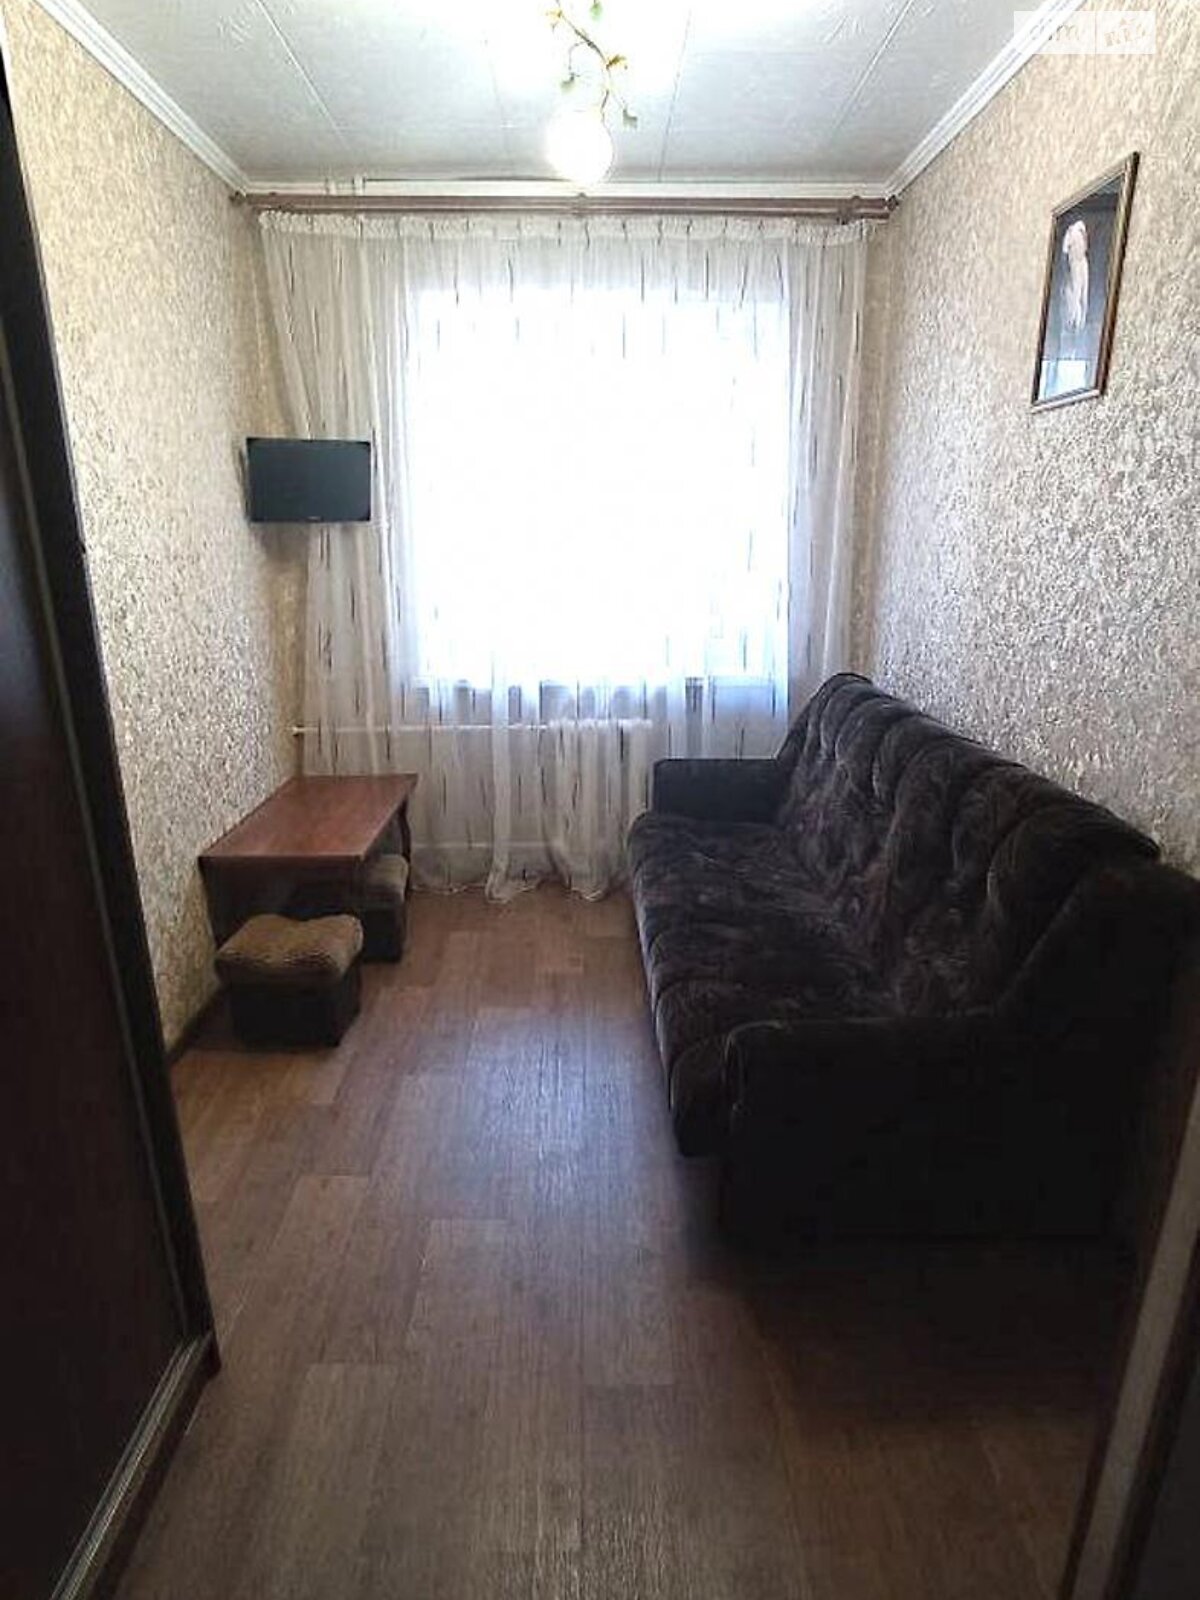 Комната в Харькове, на ул. Шекспира 13 в районе Павлово Поле на продажу фото 1